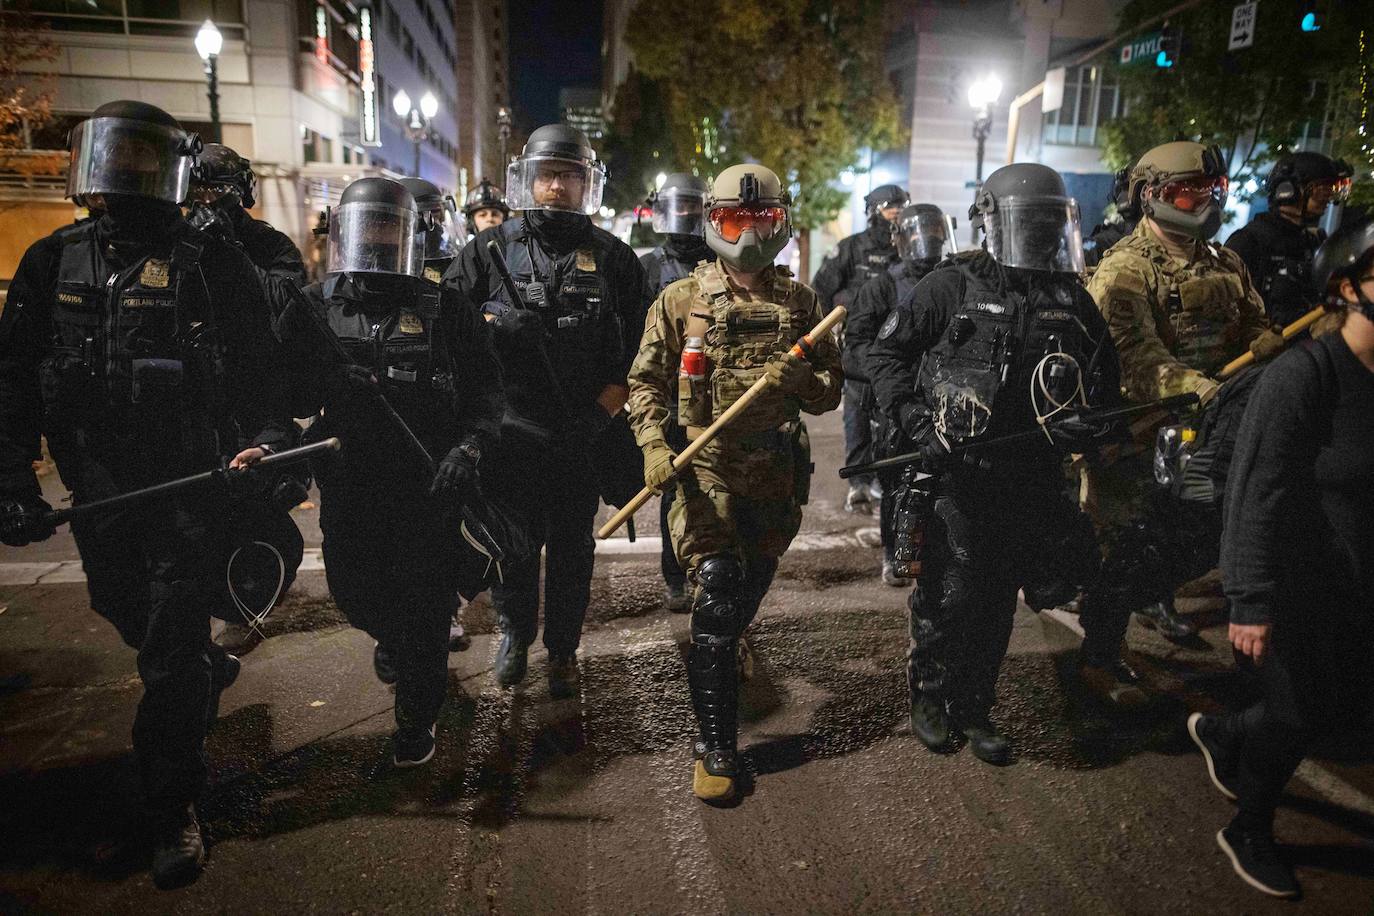 Soldados de la Guardia Nacional ayudan a la policía local a dispersar a los manifestantes antifascistas después de las elecciones presidenciales de Estados Unidos en Portland, Oregon, EE.UU.